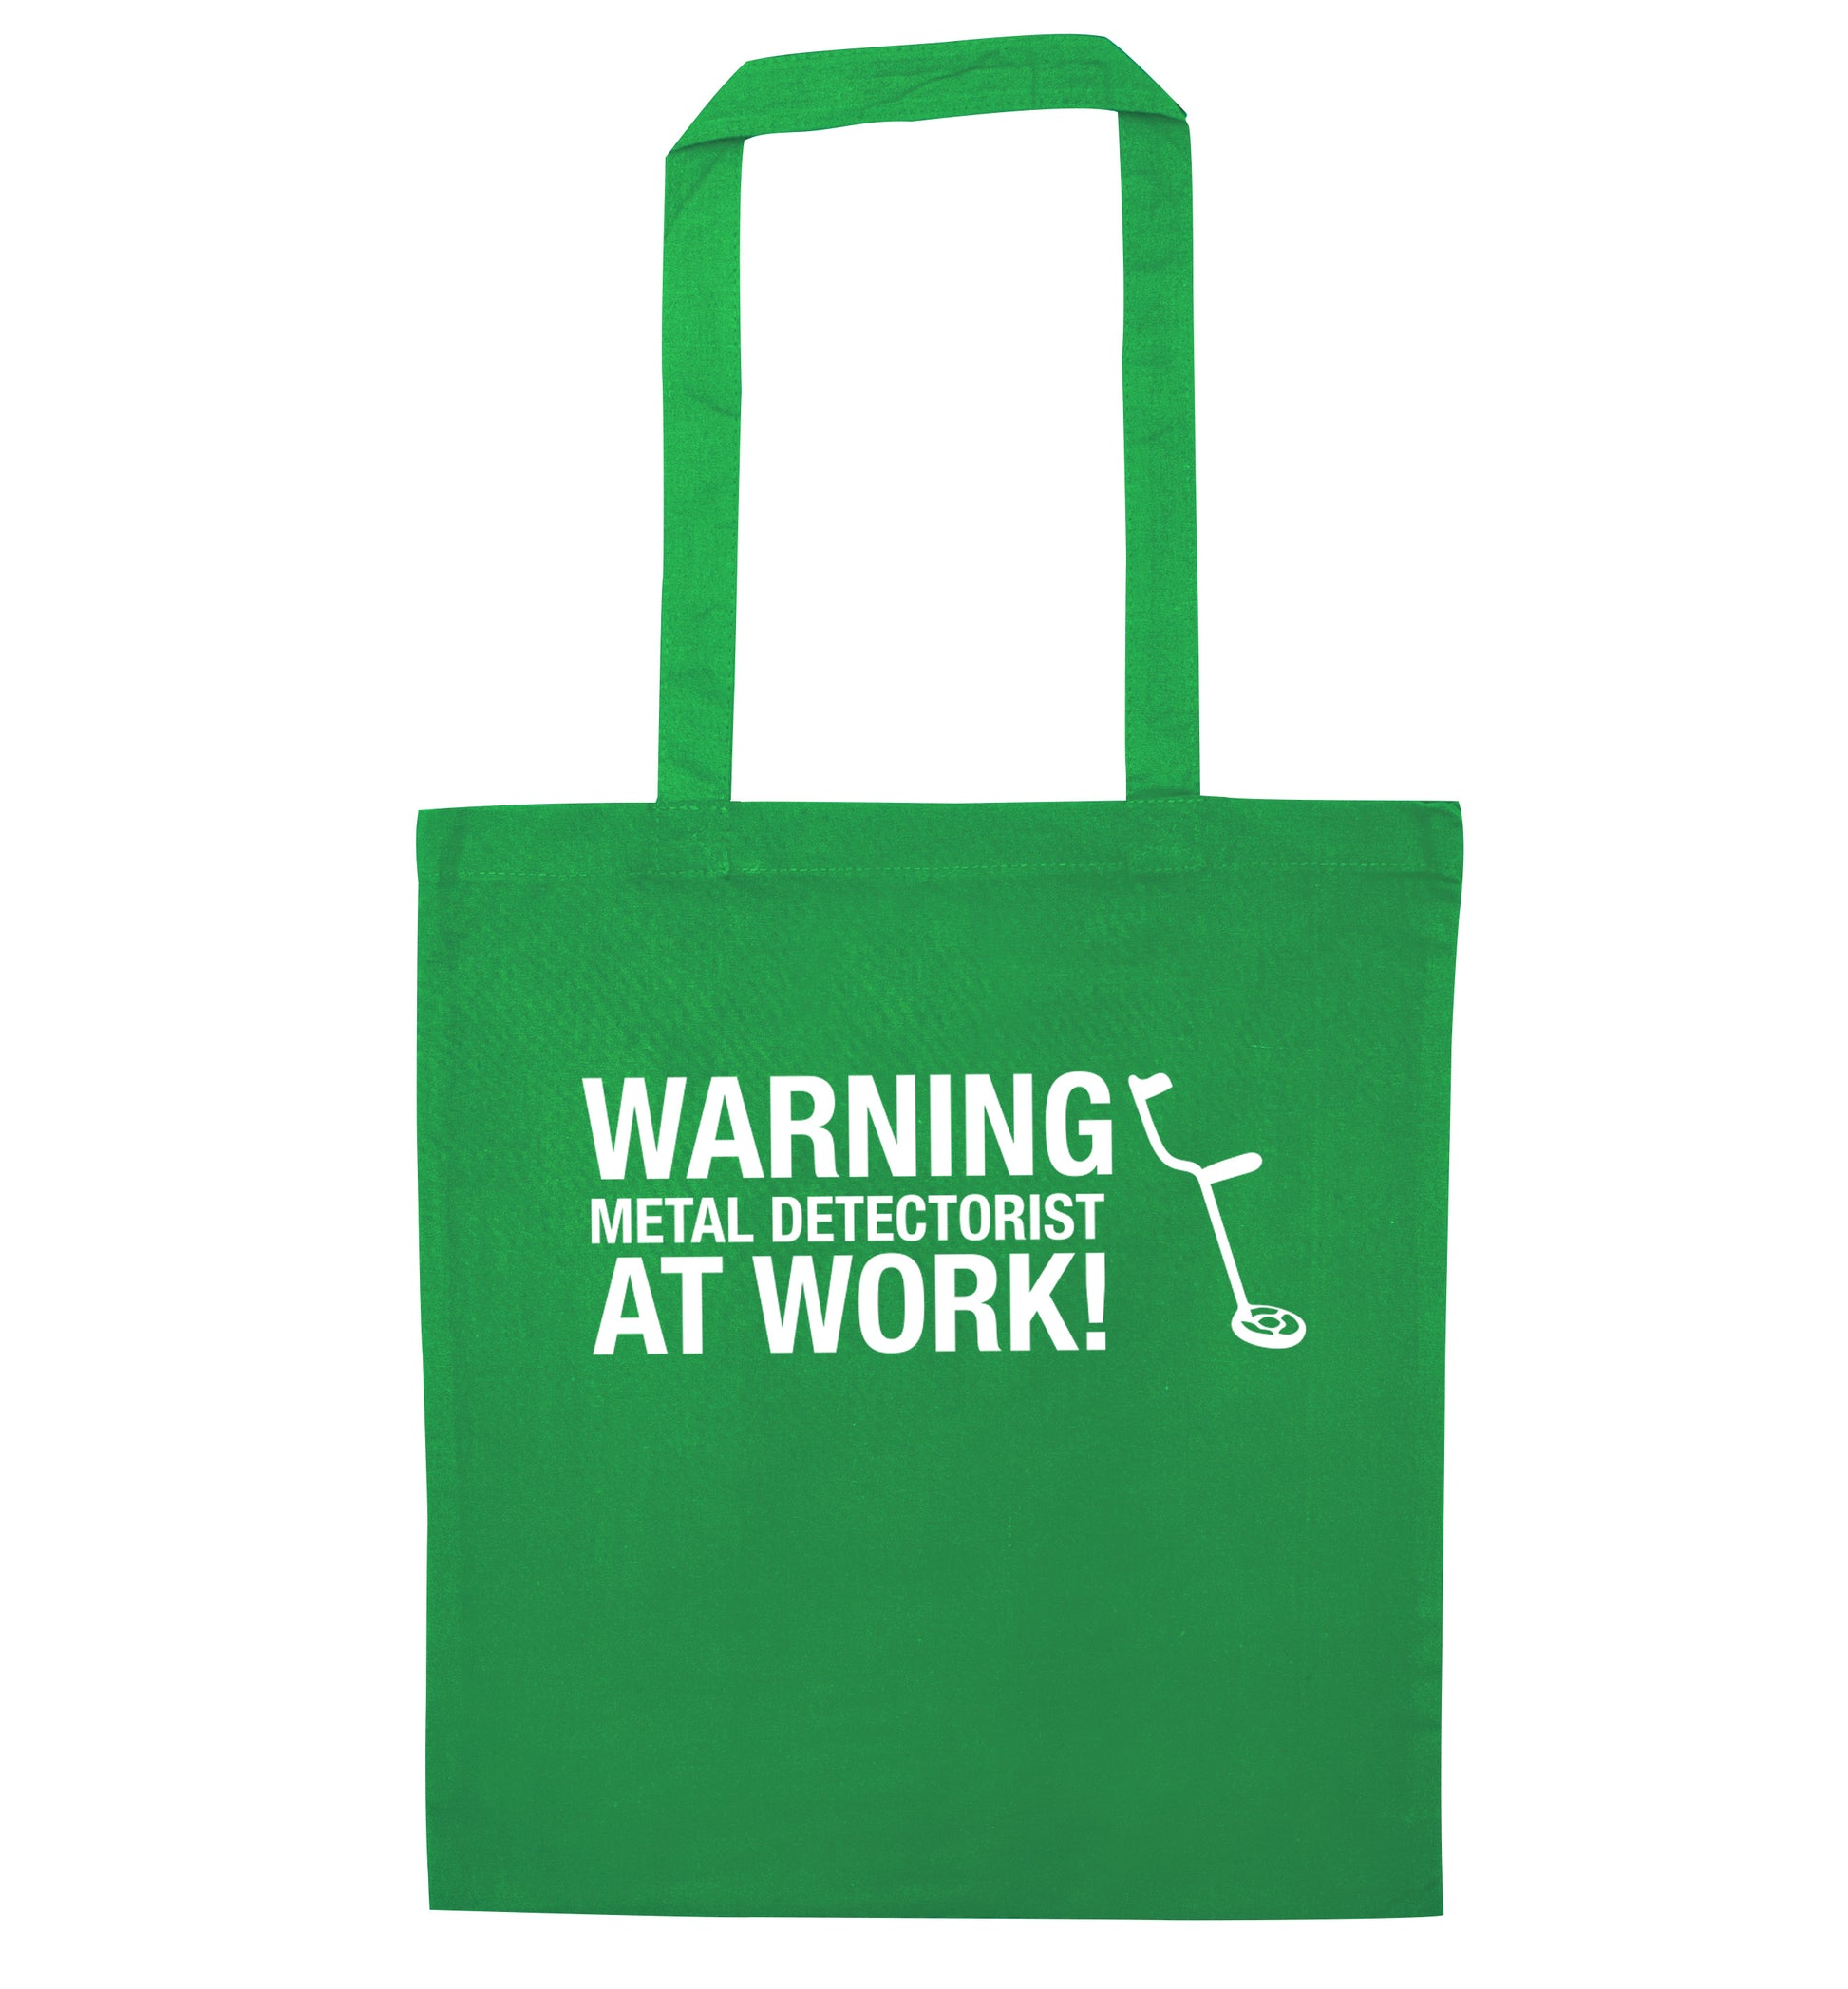 Warning metal detectorist at work! green tote bag